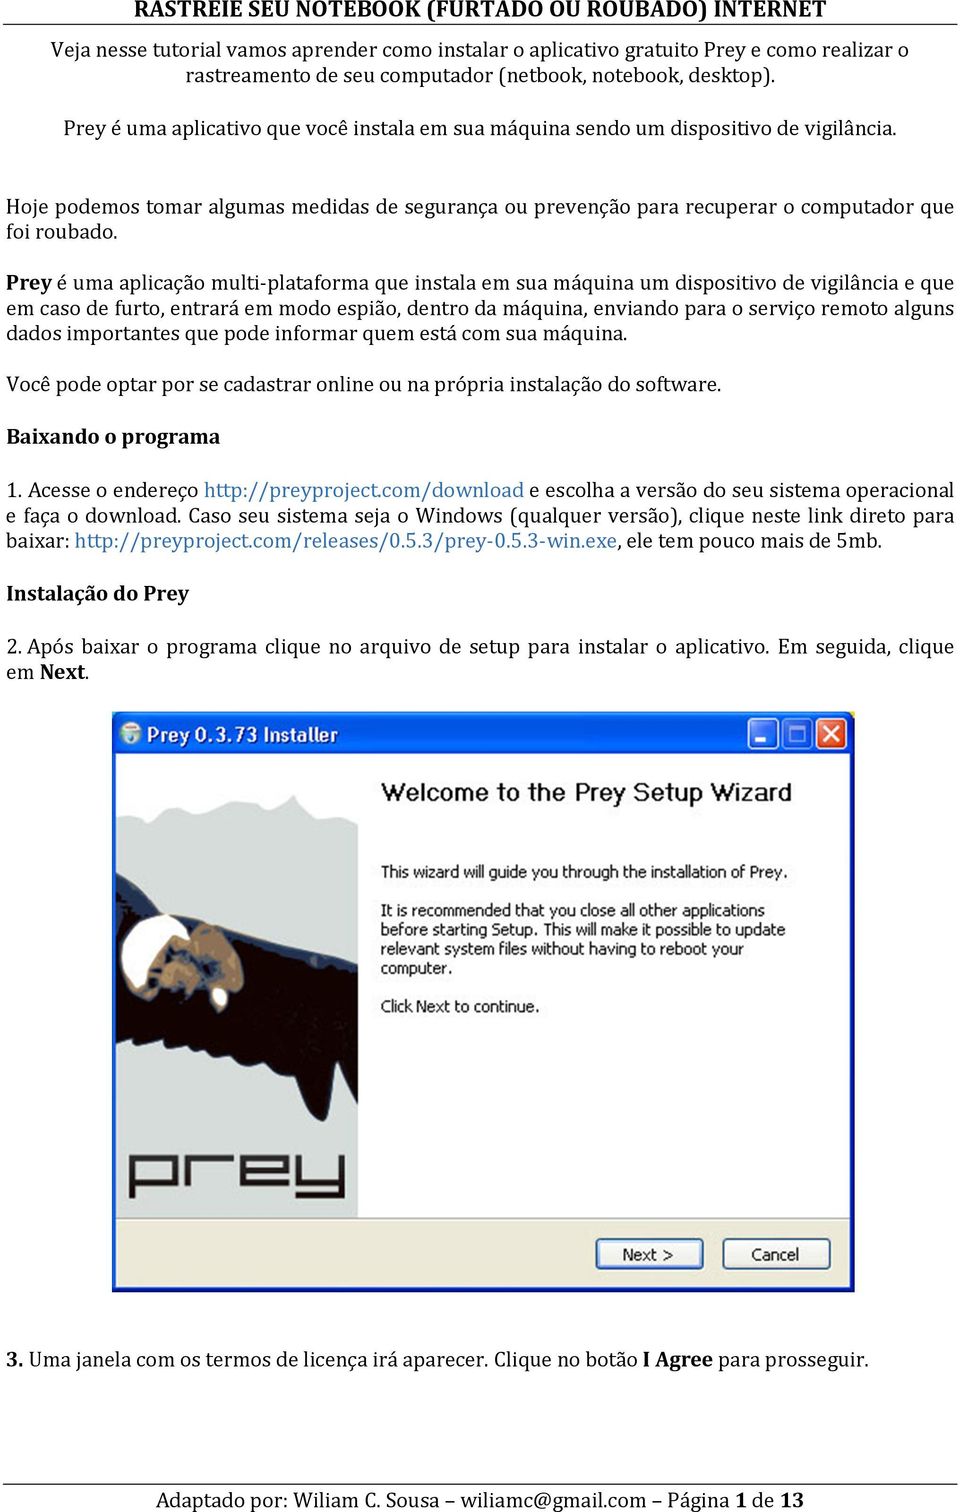 Prey é uma aplicação multi-plataforma que instala em sua máquina um dispositivo de vigilância e que em caso de furto, entrará em modo espião, dentro da máquina, enviando para o serviço remoto alguns